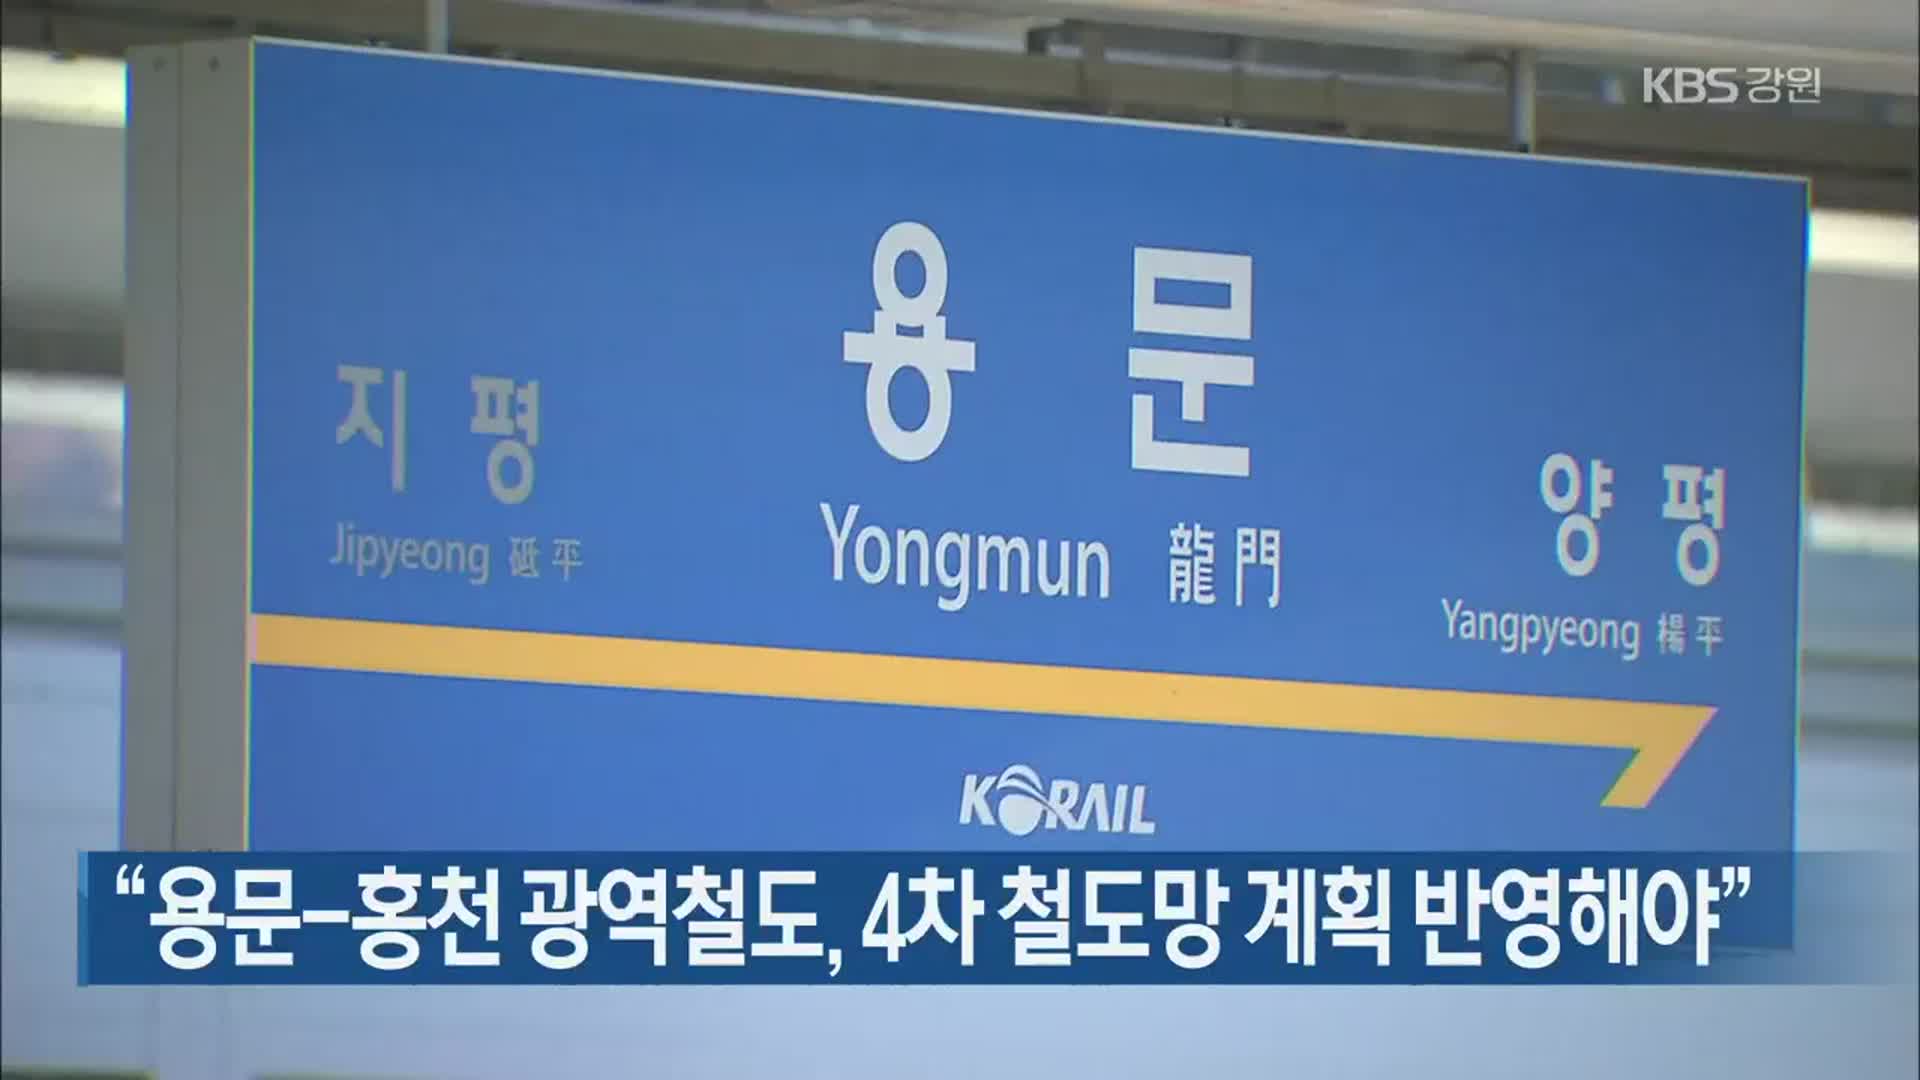 “용문-홍천 광역철도, 4차 철도망 계획 반영해야”